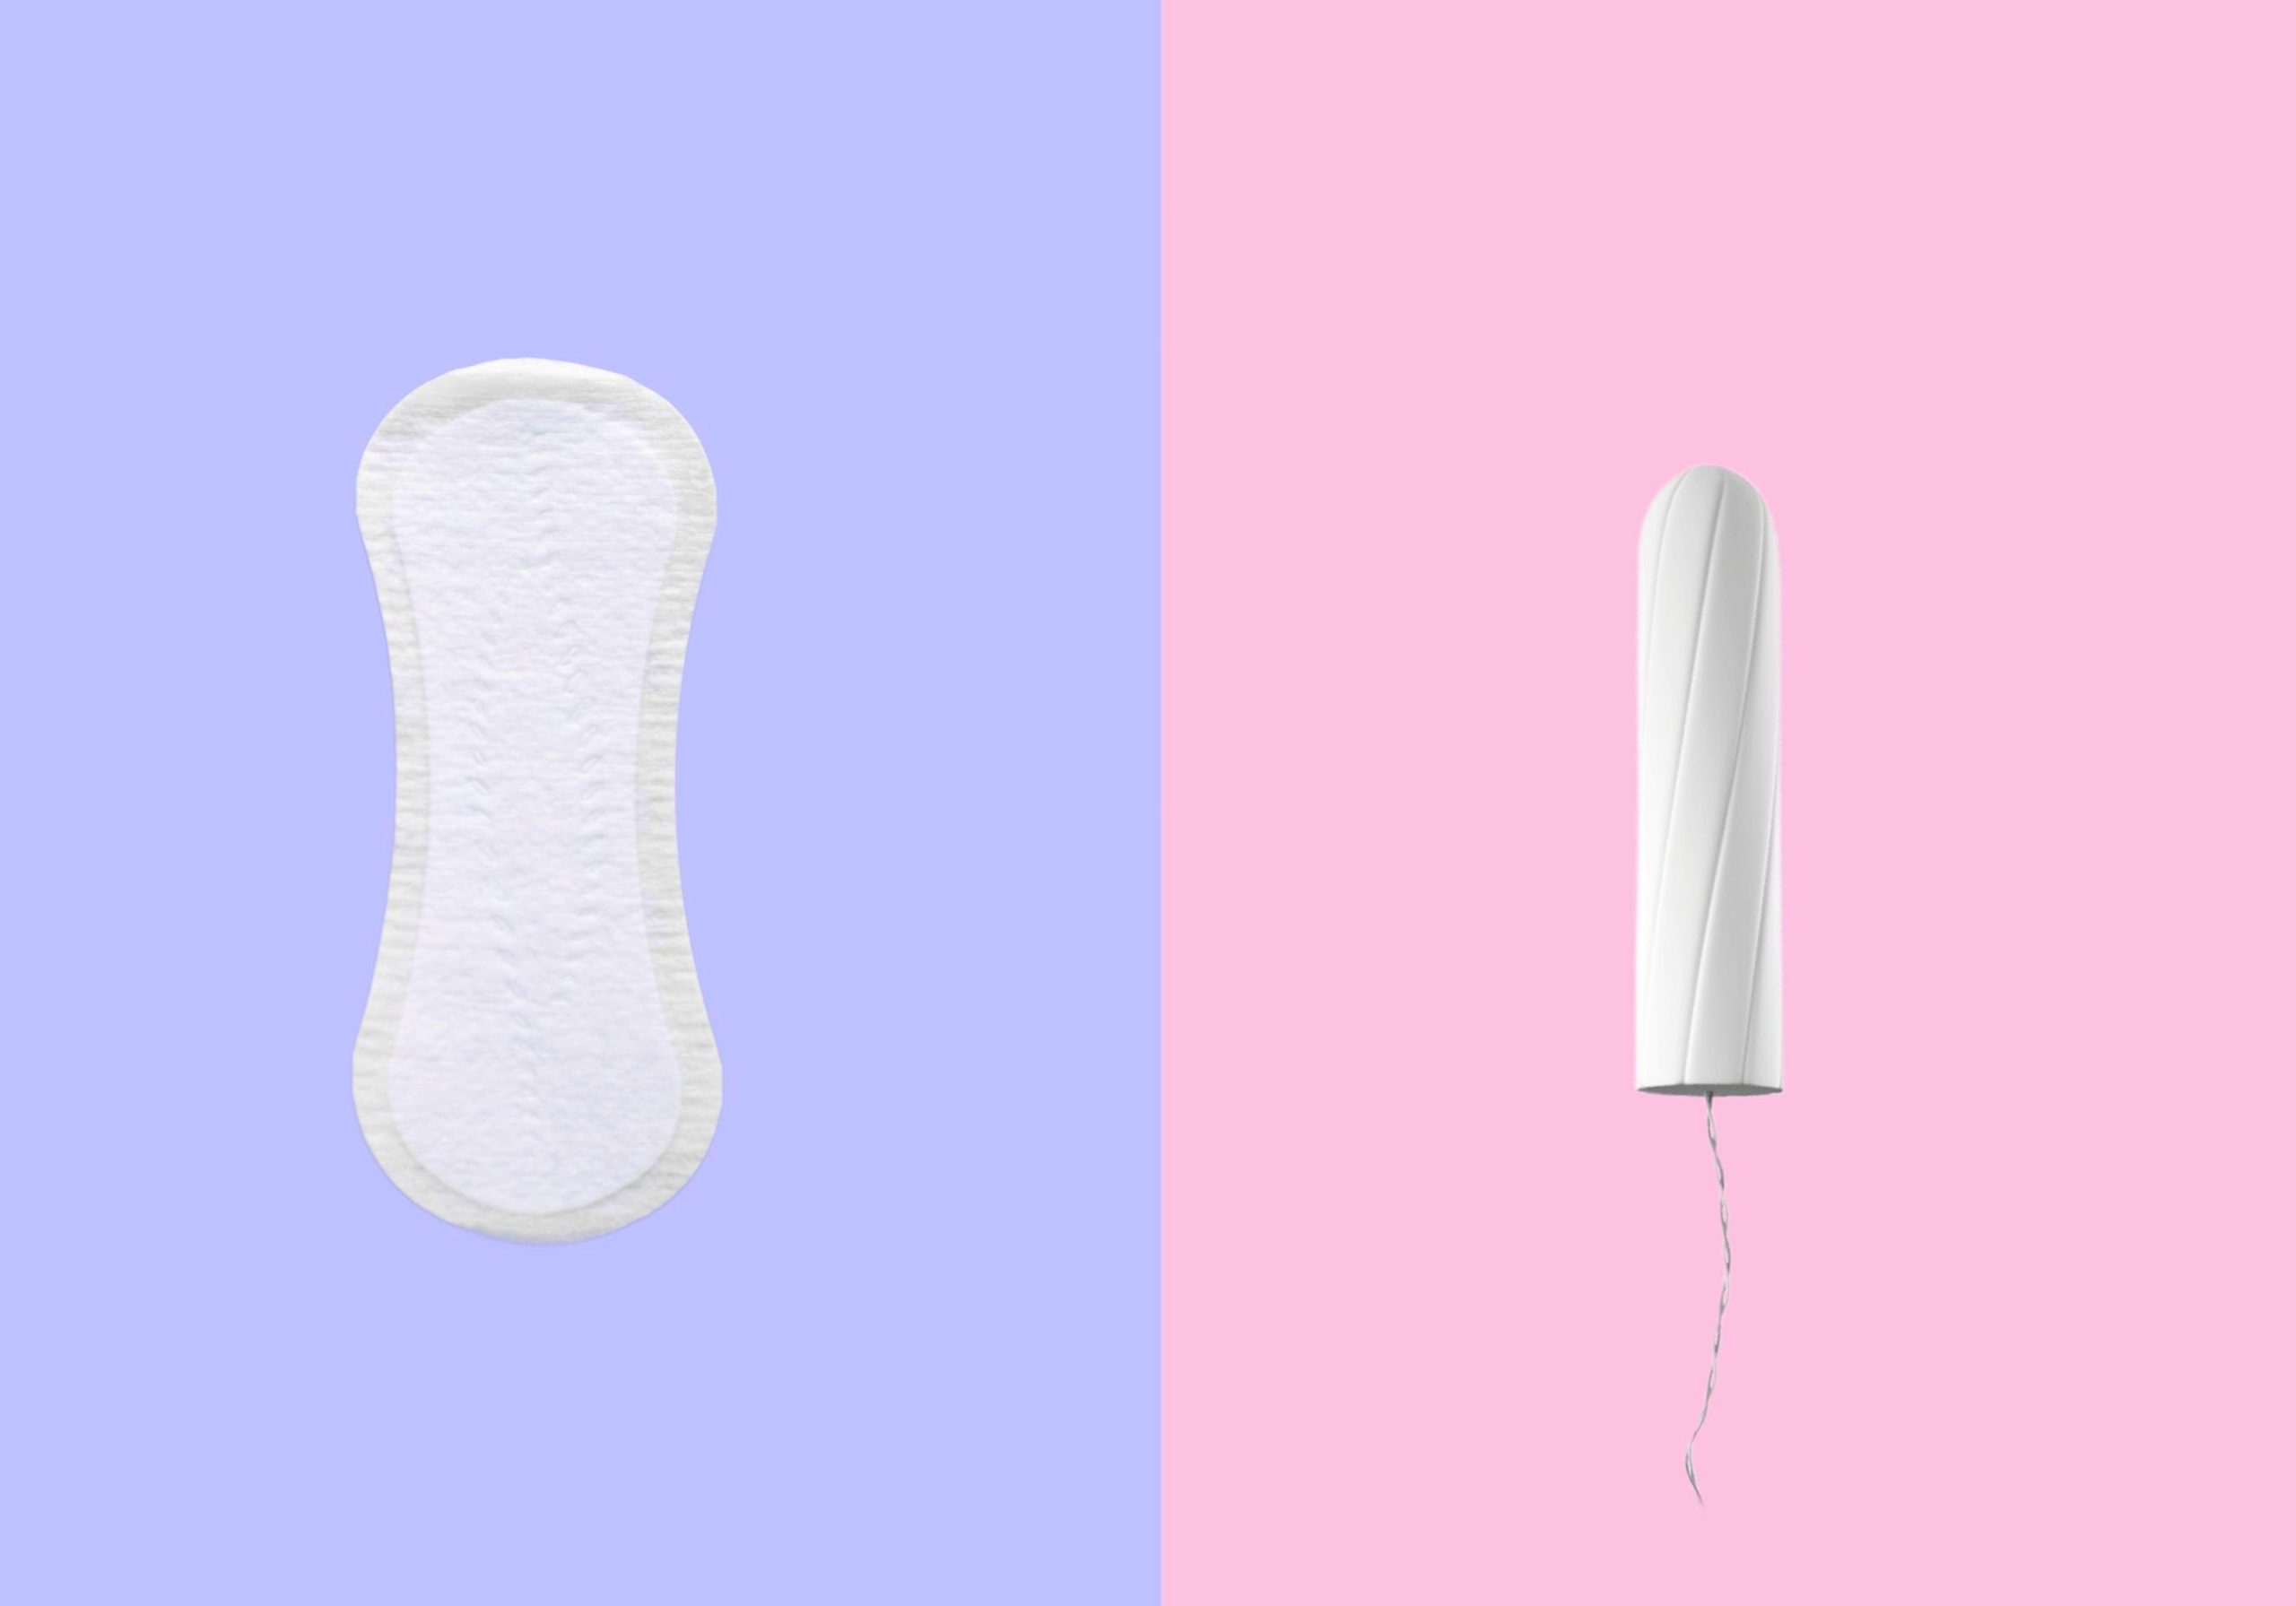 ‘Maak menstruatieproducten beter beschikbaar’